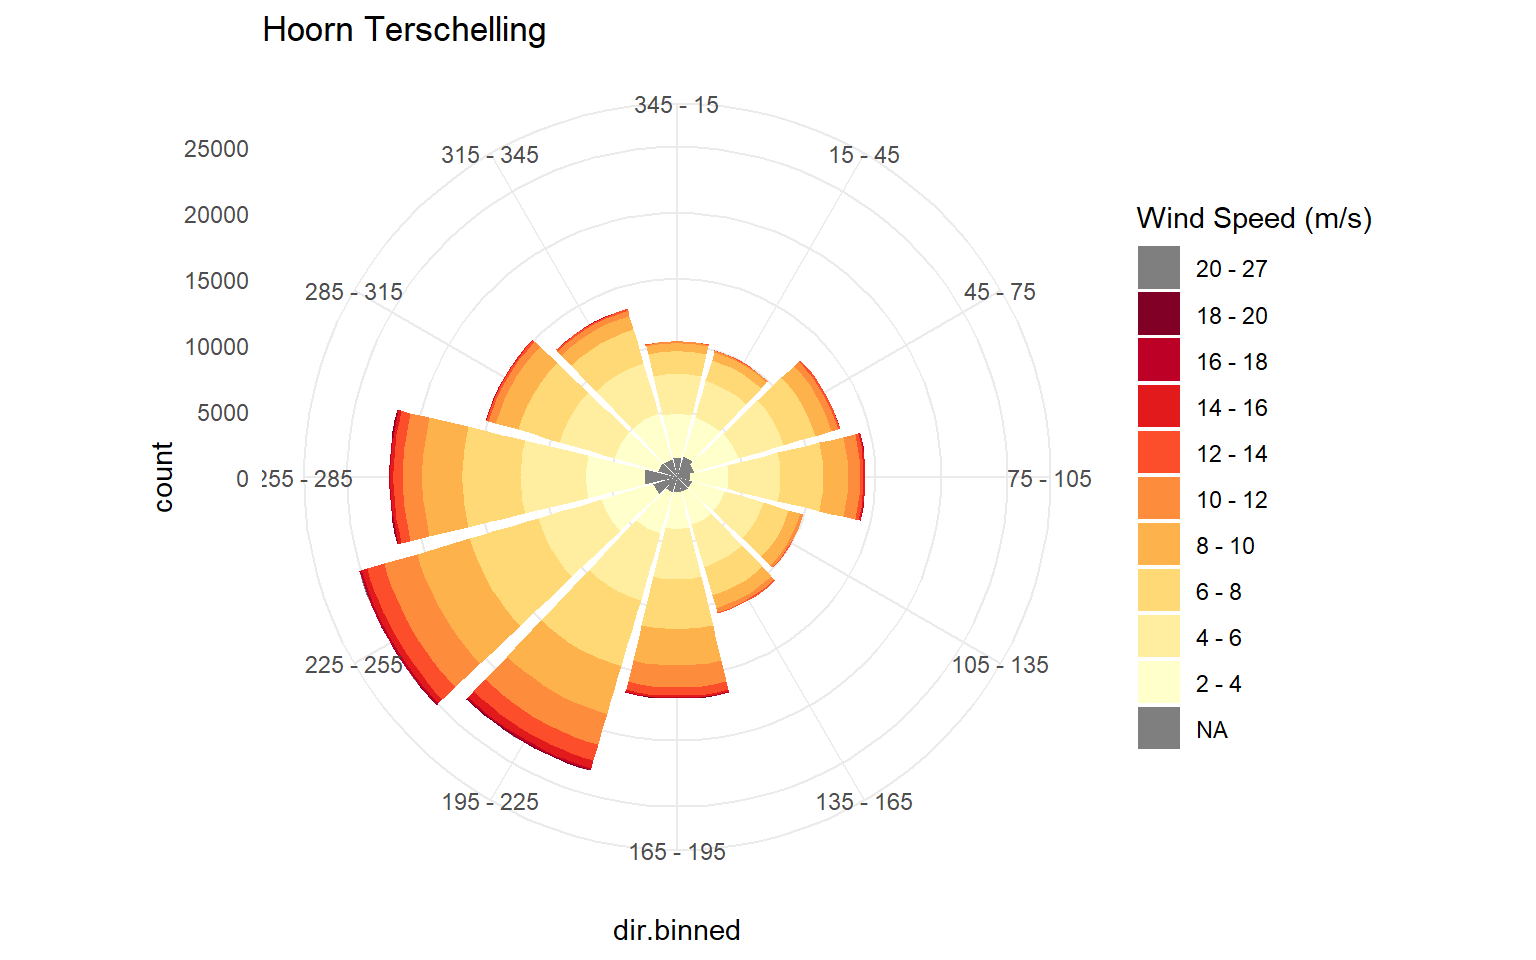 Windroos over de periode 1990 - 2018. Kleuren geven klassen van windsnelheid aan, de lengte van de spaken de windsterktefrequentie/voorkomen per windrichting.